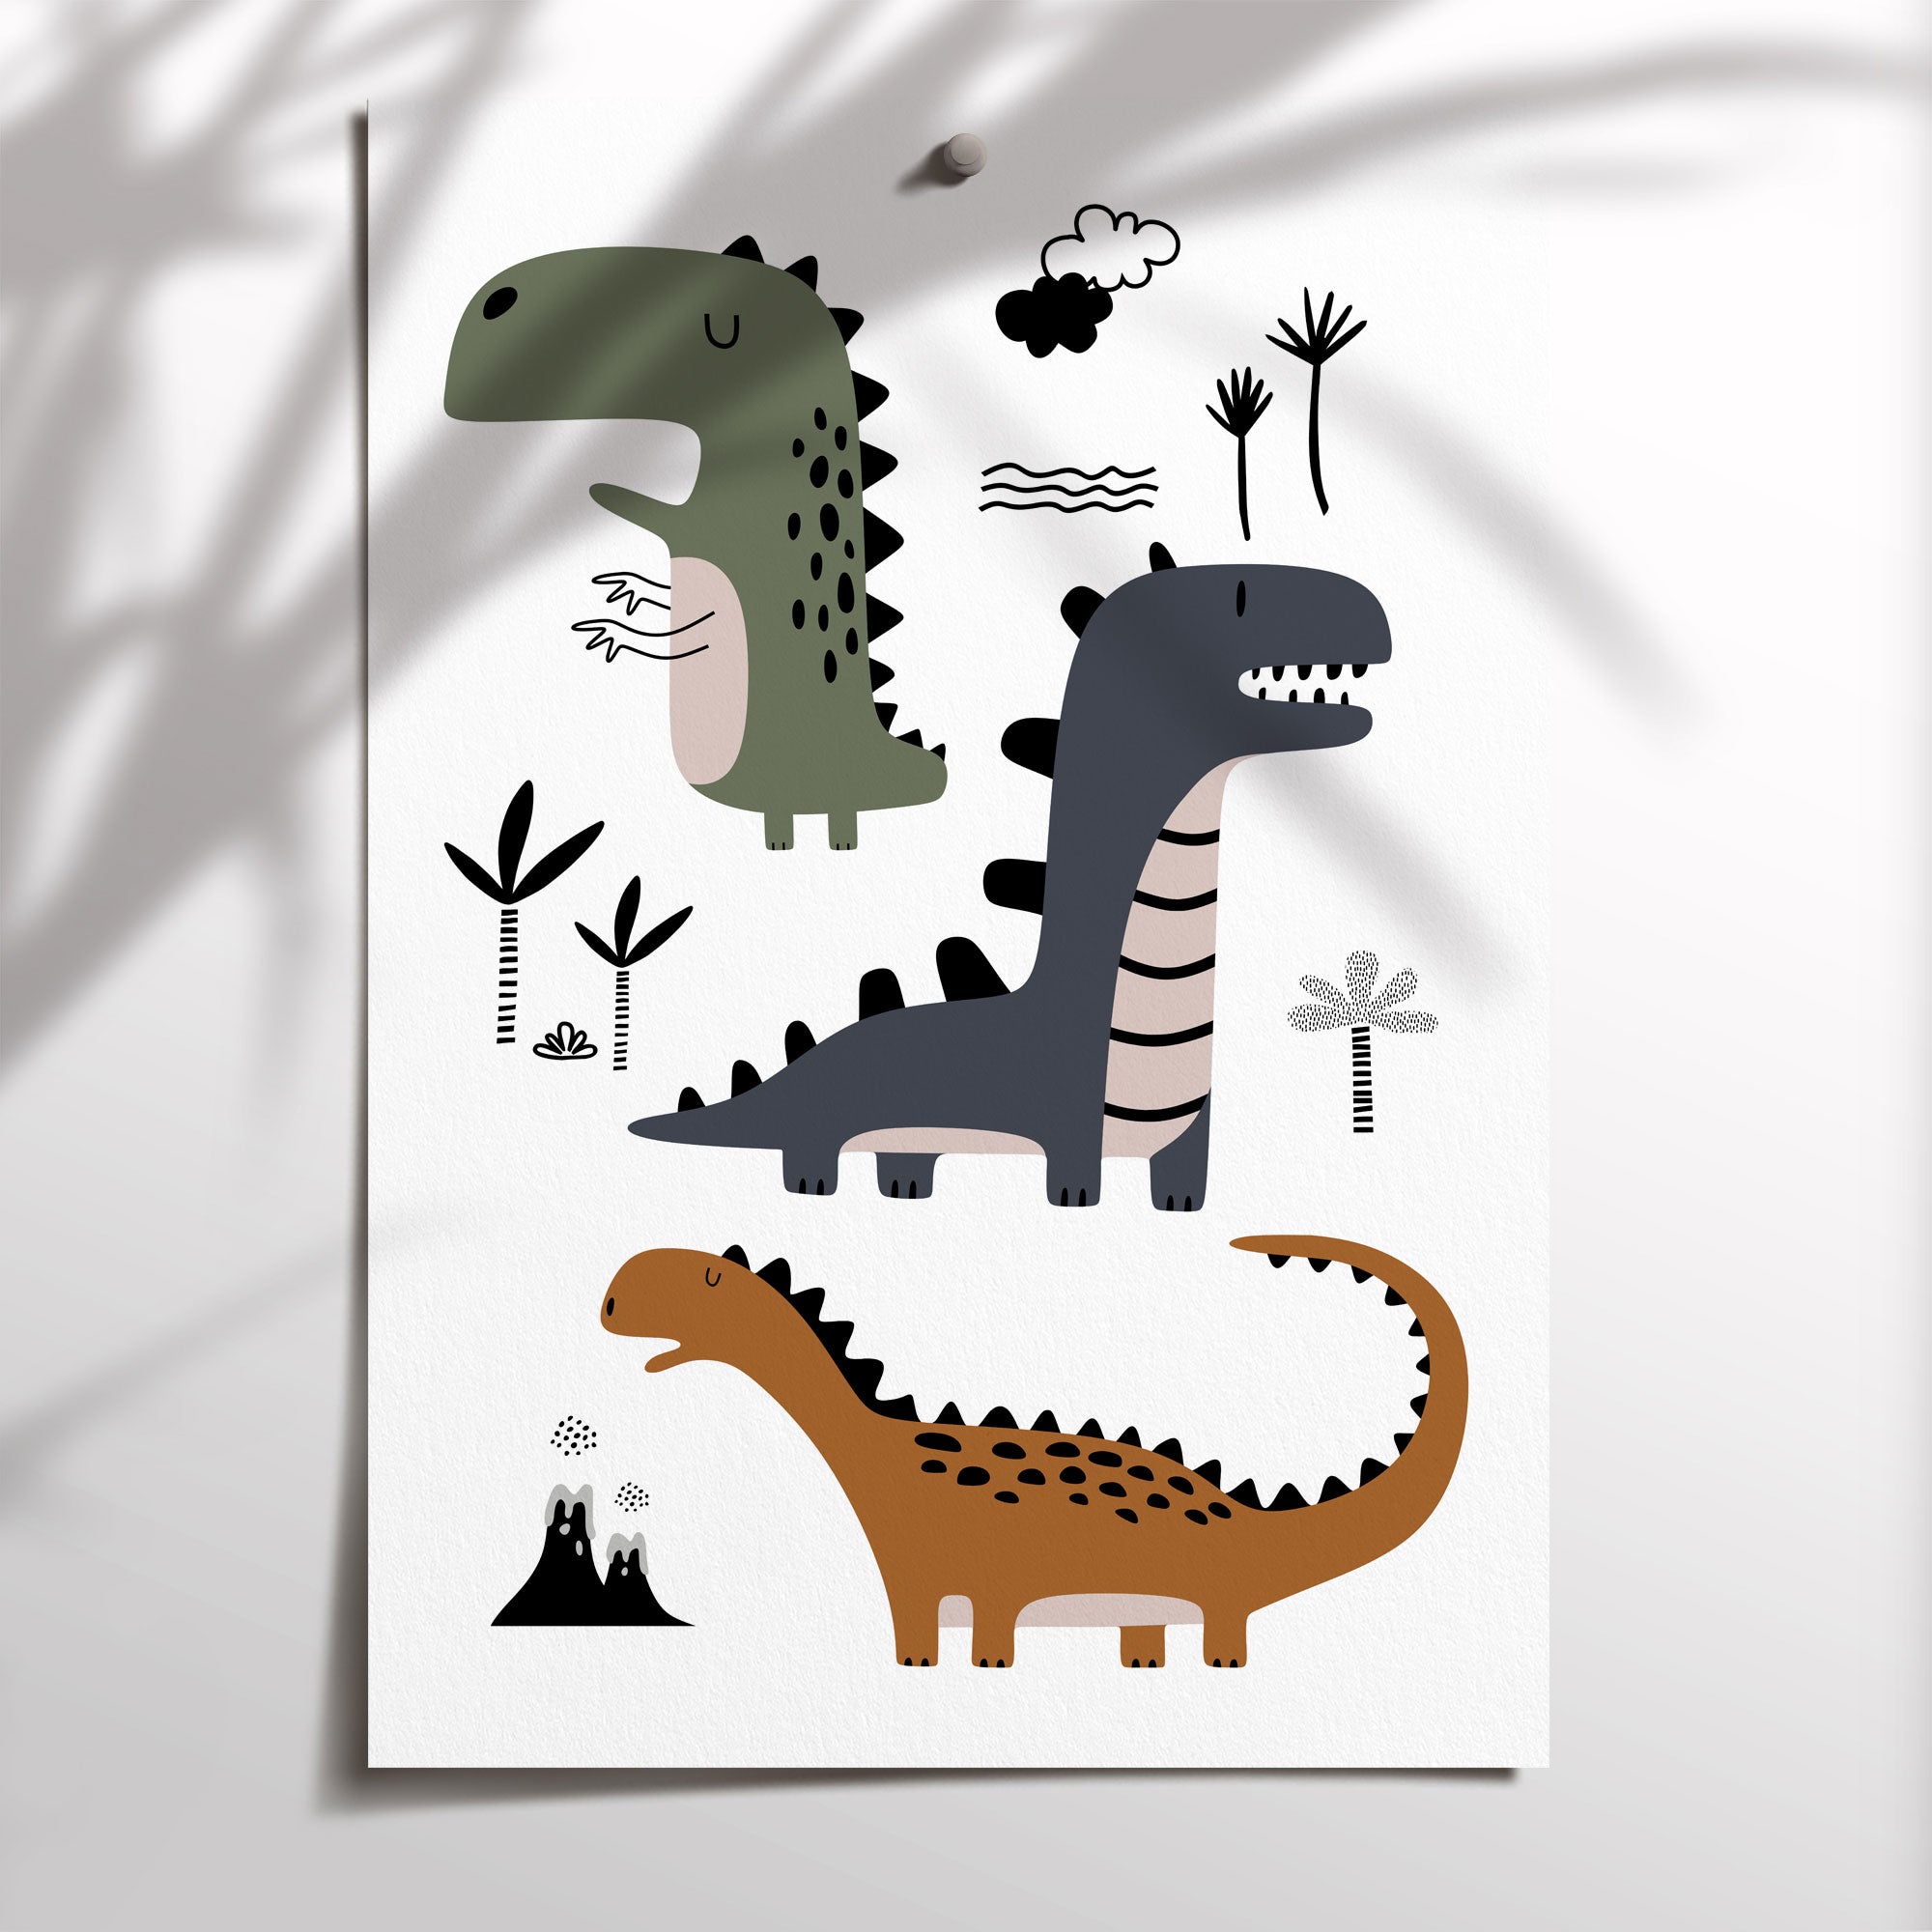 Name & Dinosaur Prints